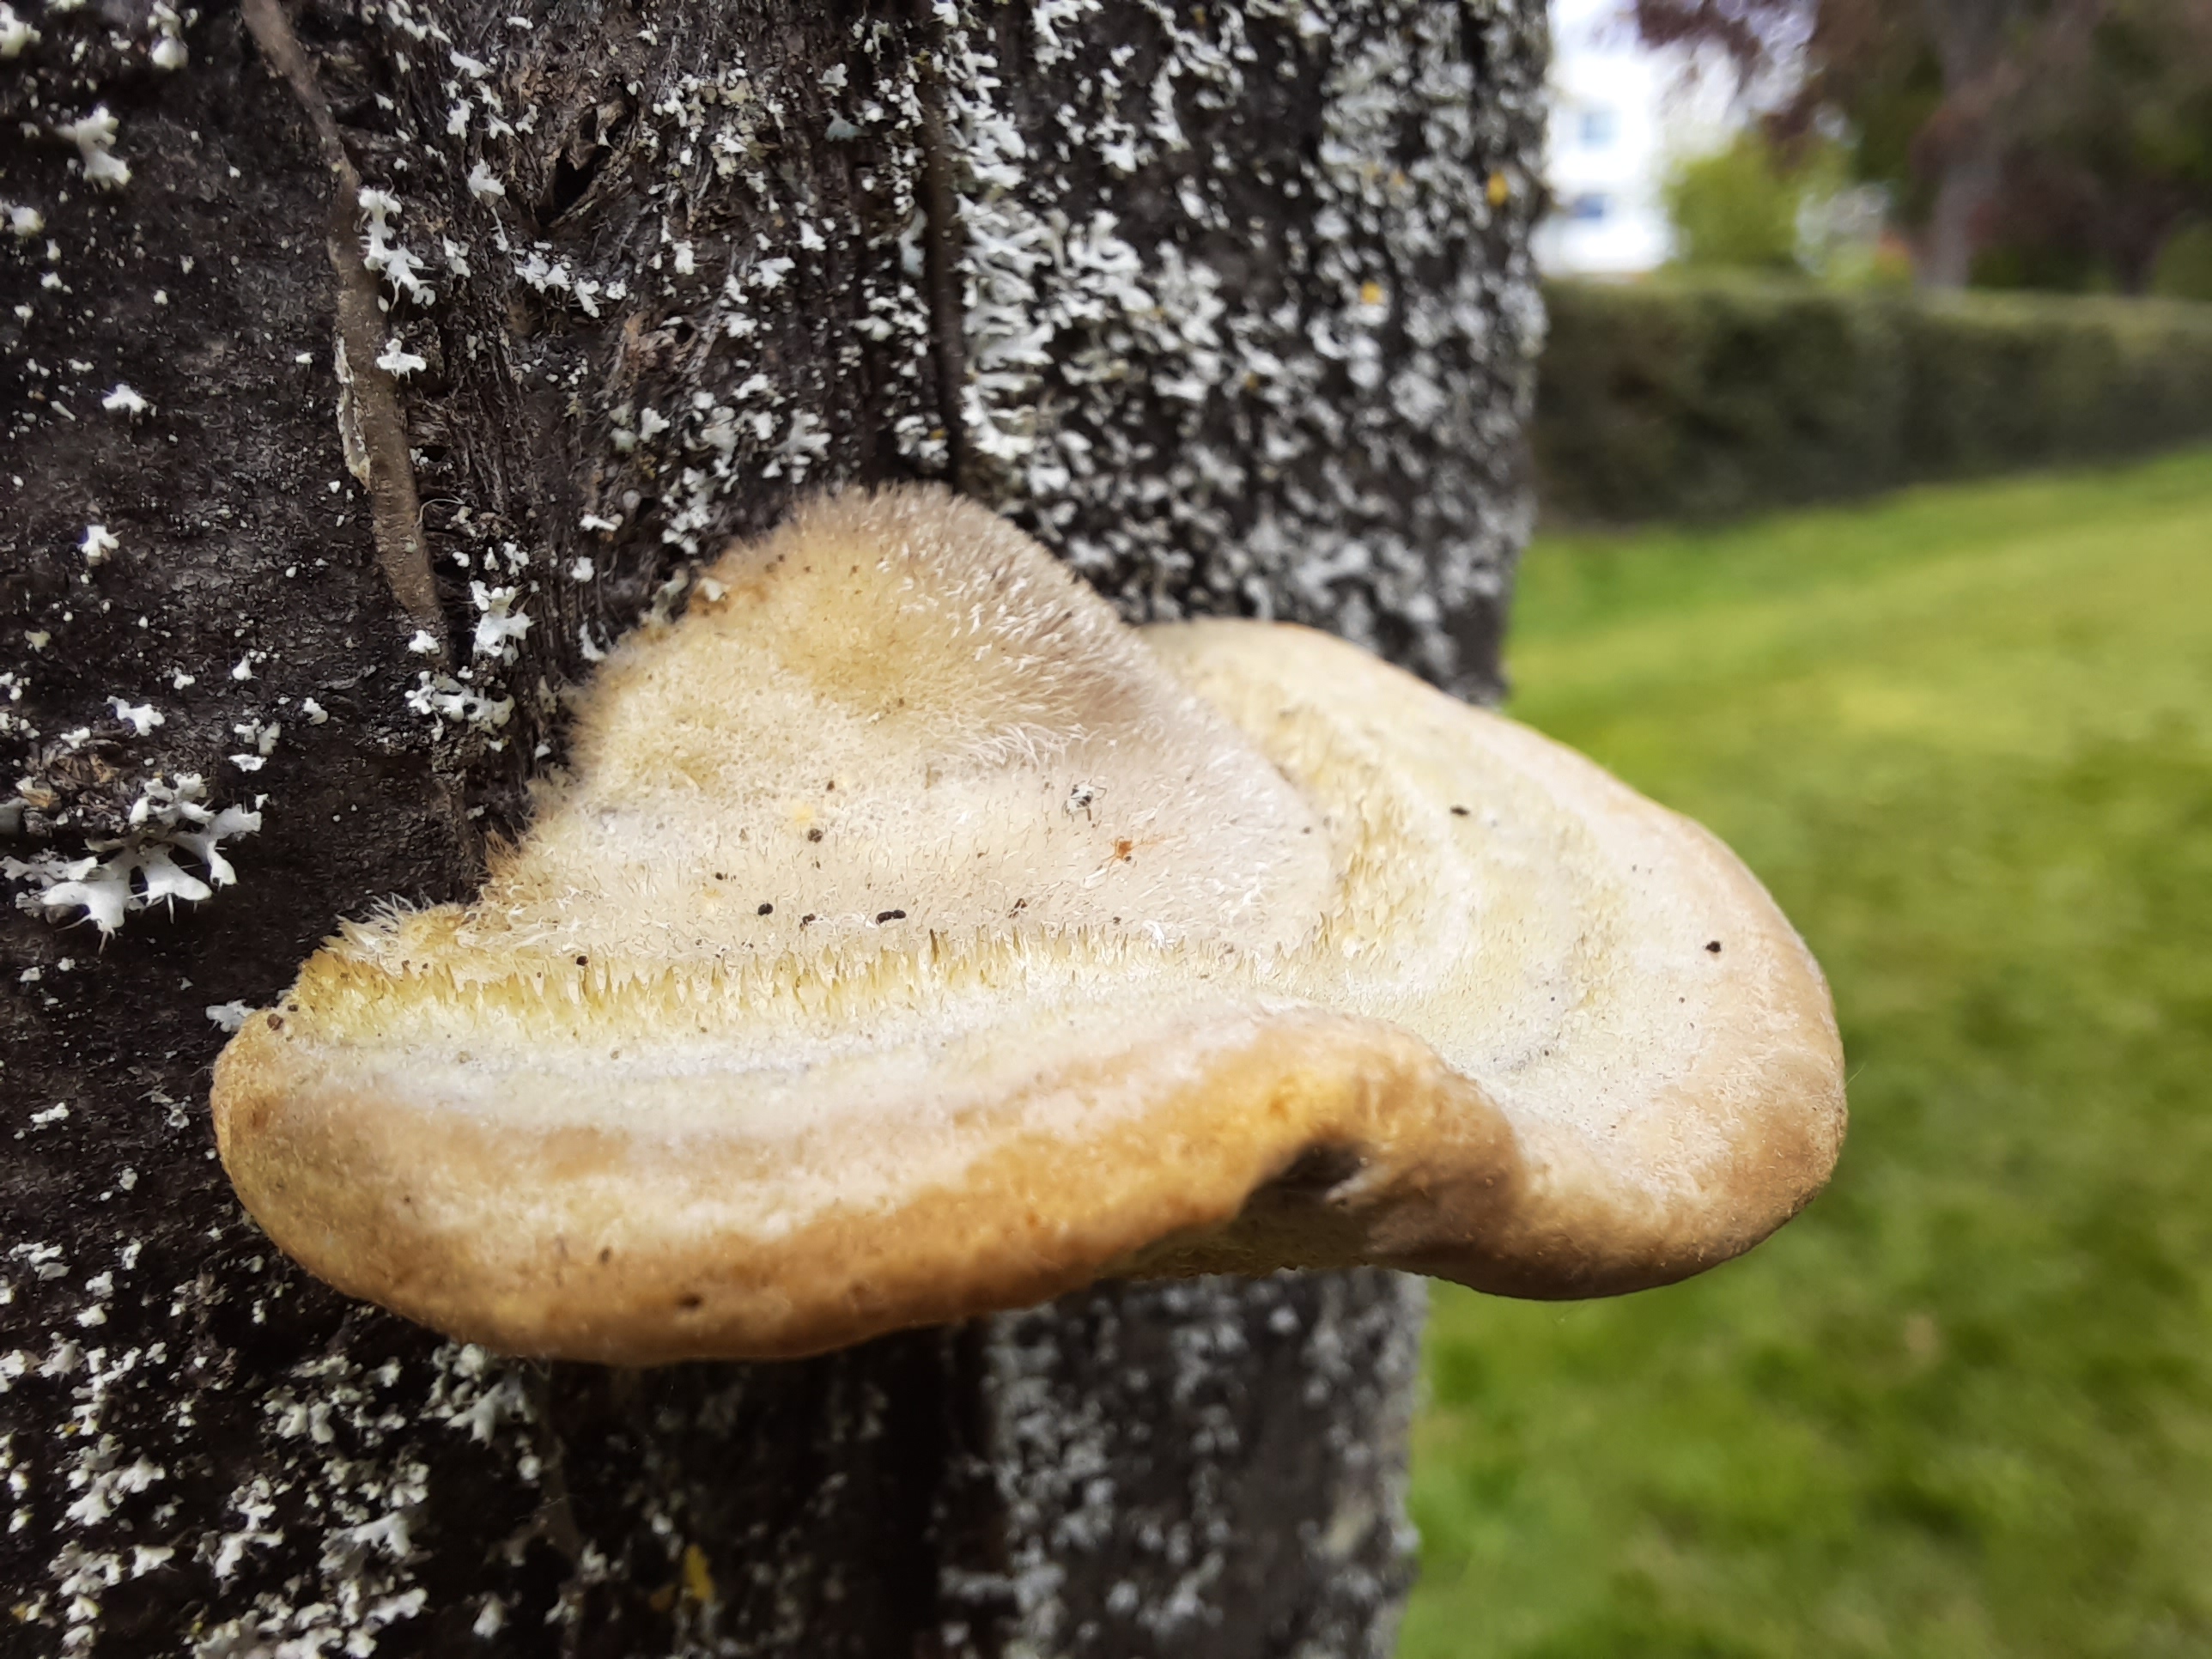 Sapevate che alcuni funghi presentano una peluria? Un obiettivo macro consente di catturare questo genere di dettagli.